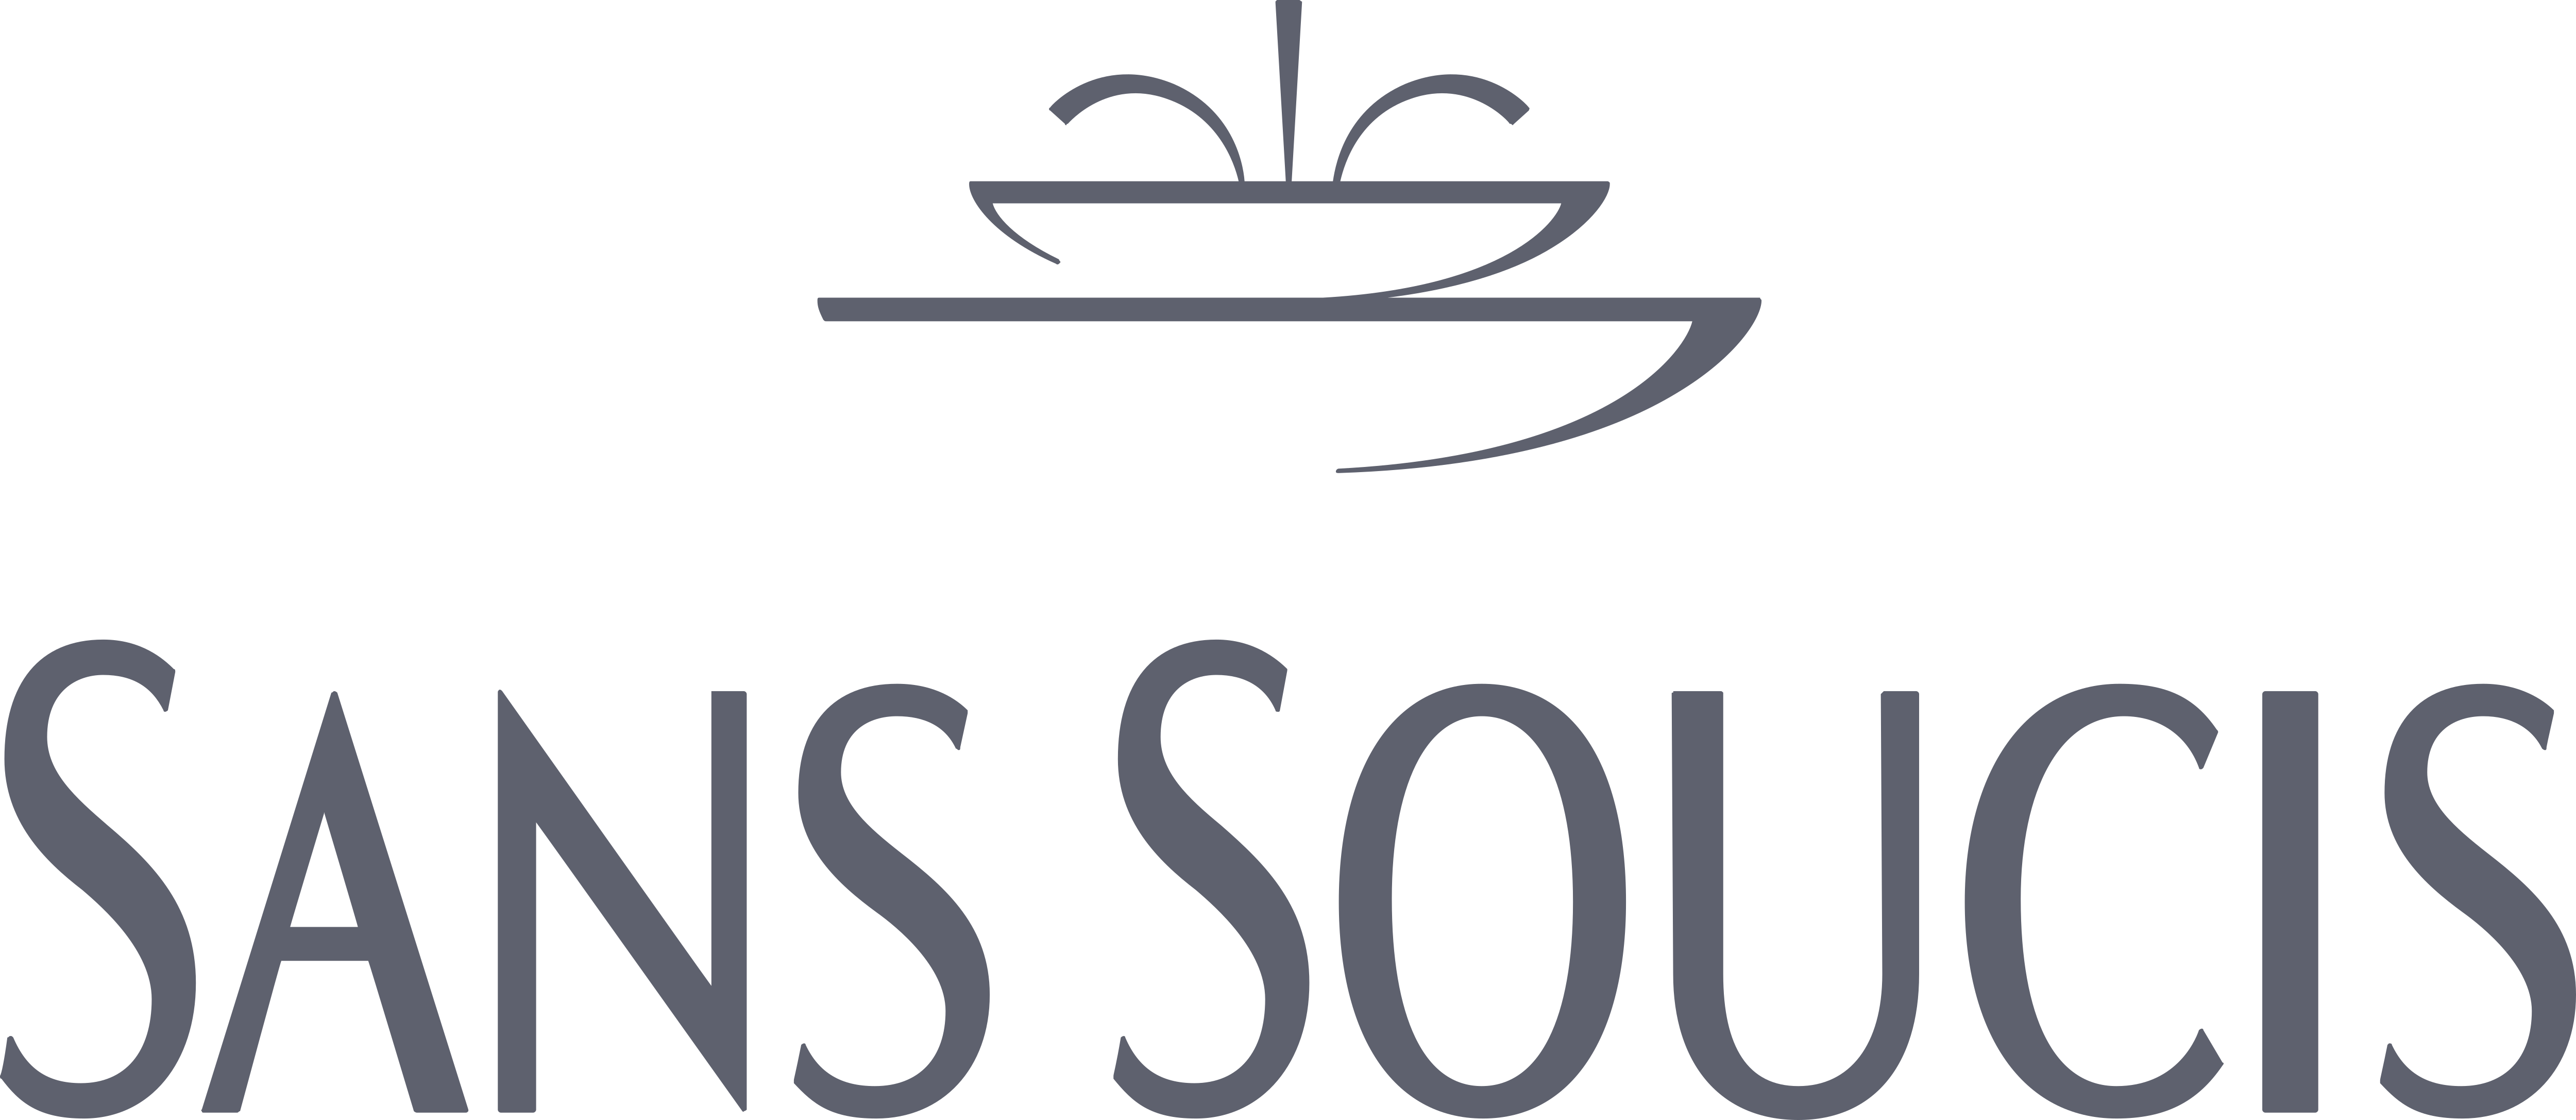 Sance лого. Sans soucis косметика. Логотип Санса. Реклама косметики Сан Суси. Sans soucis